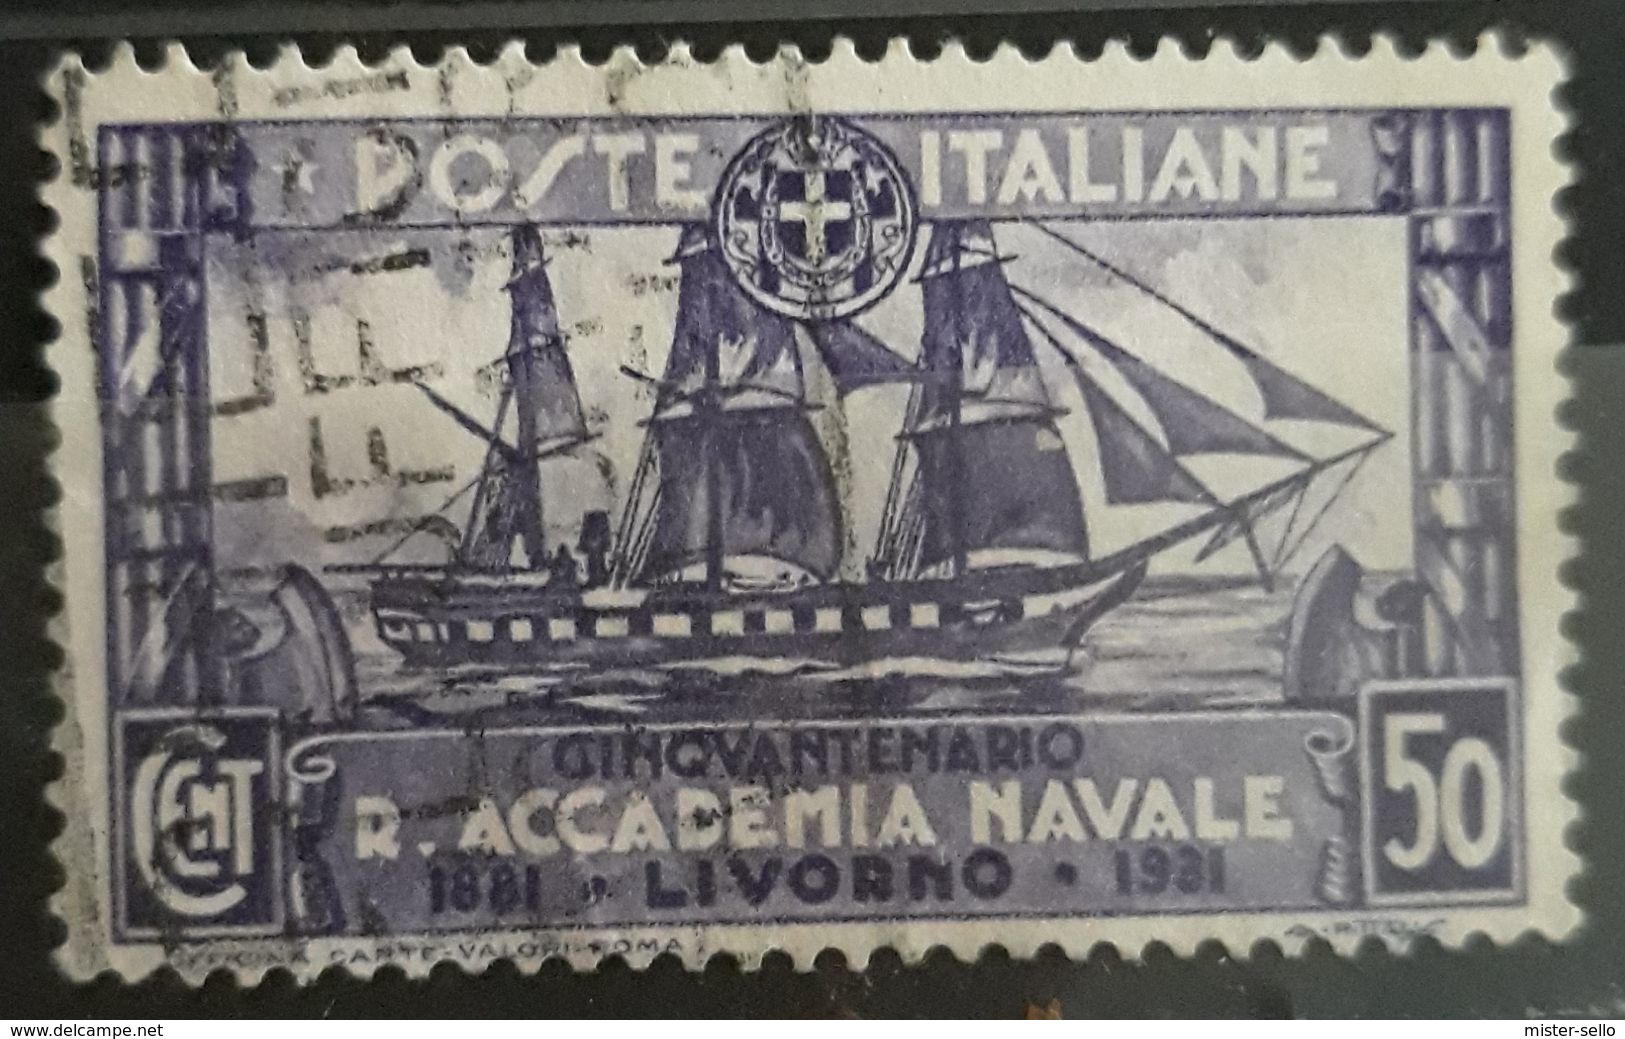 ITALIA 1931 The 50th Anniversary Of The Royal Navy Academy. USADO - USED - Usados